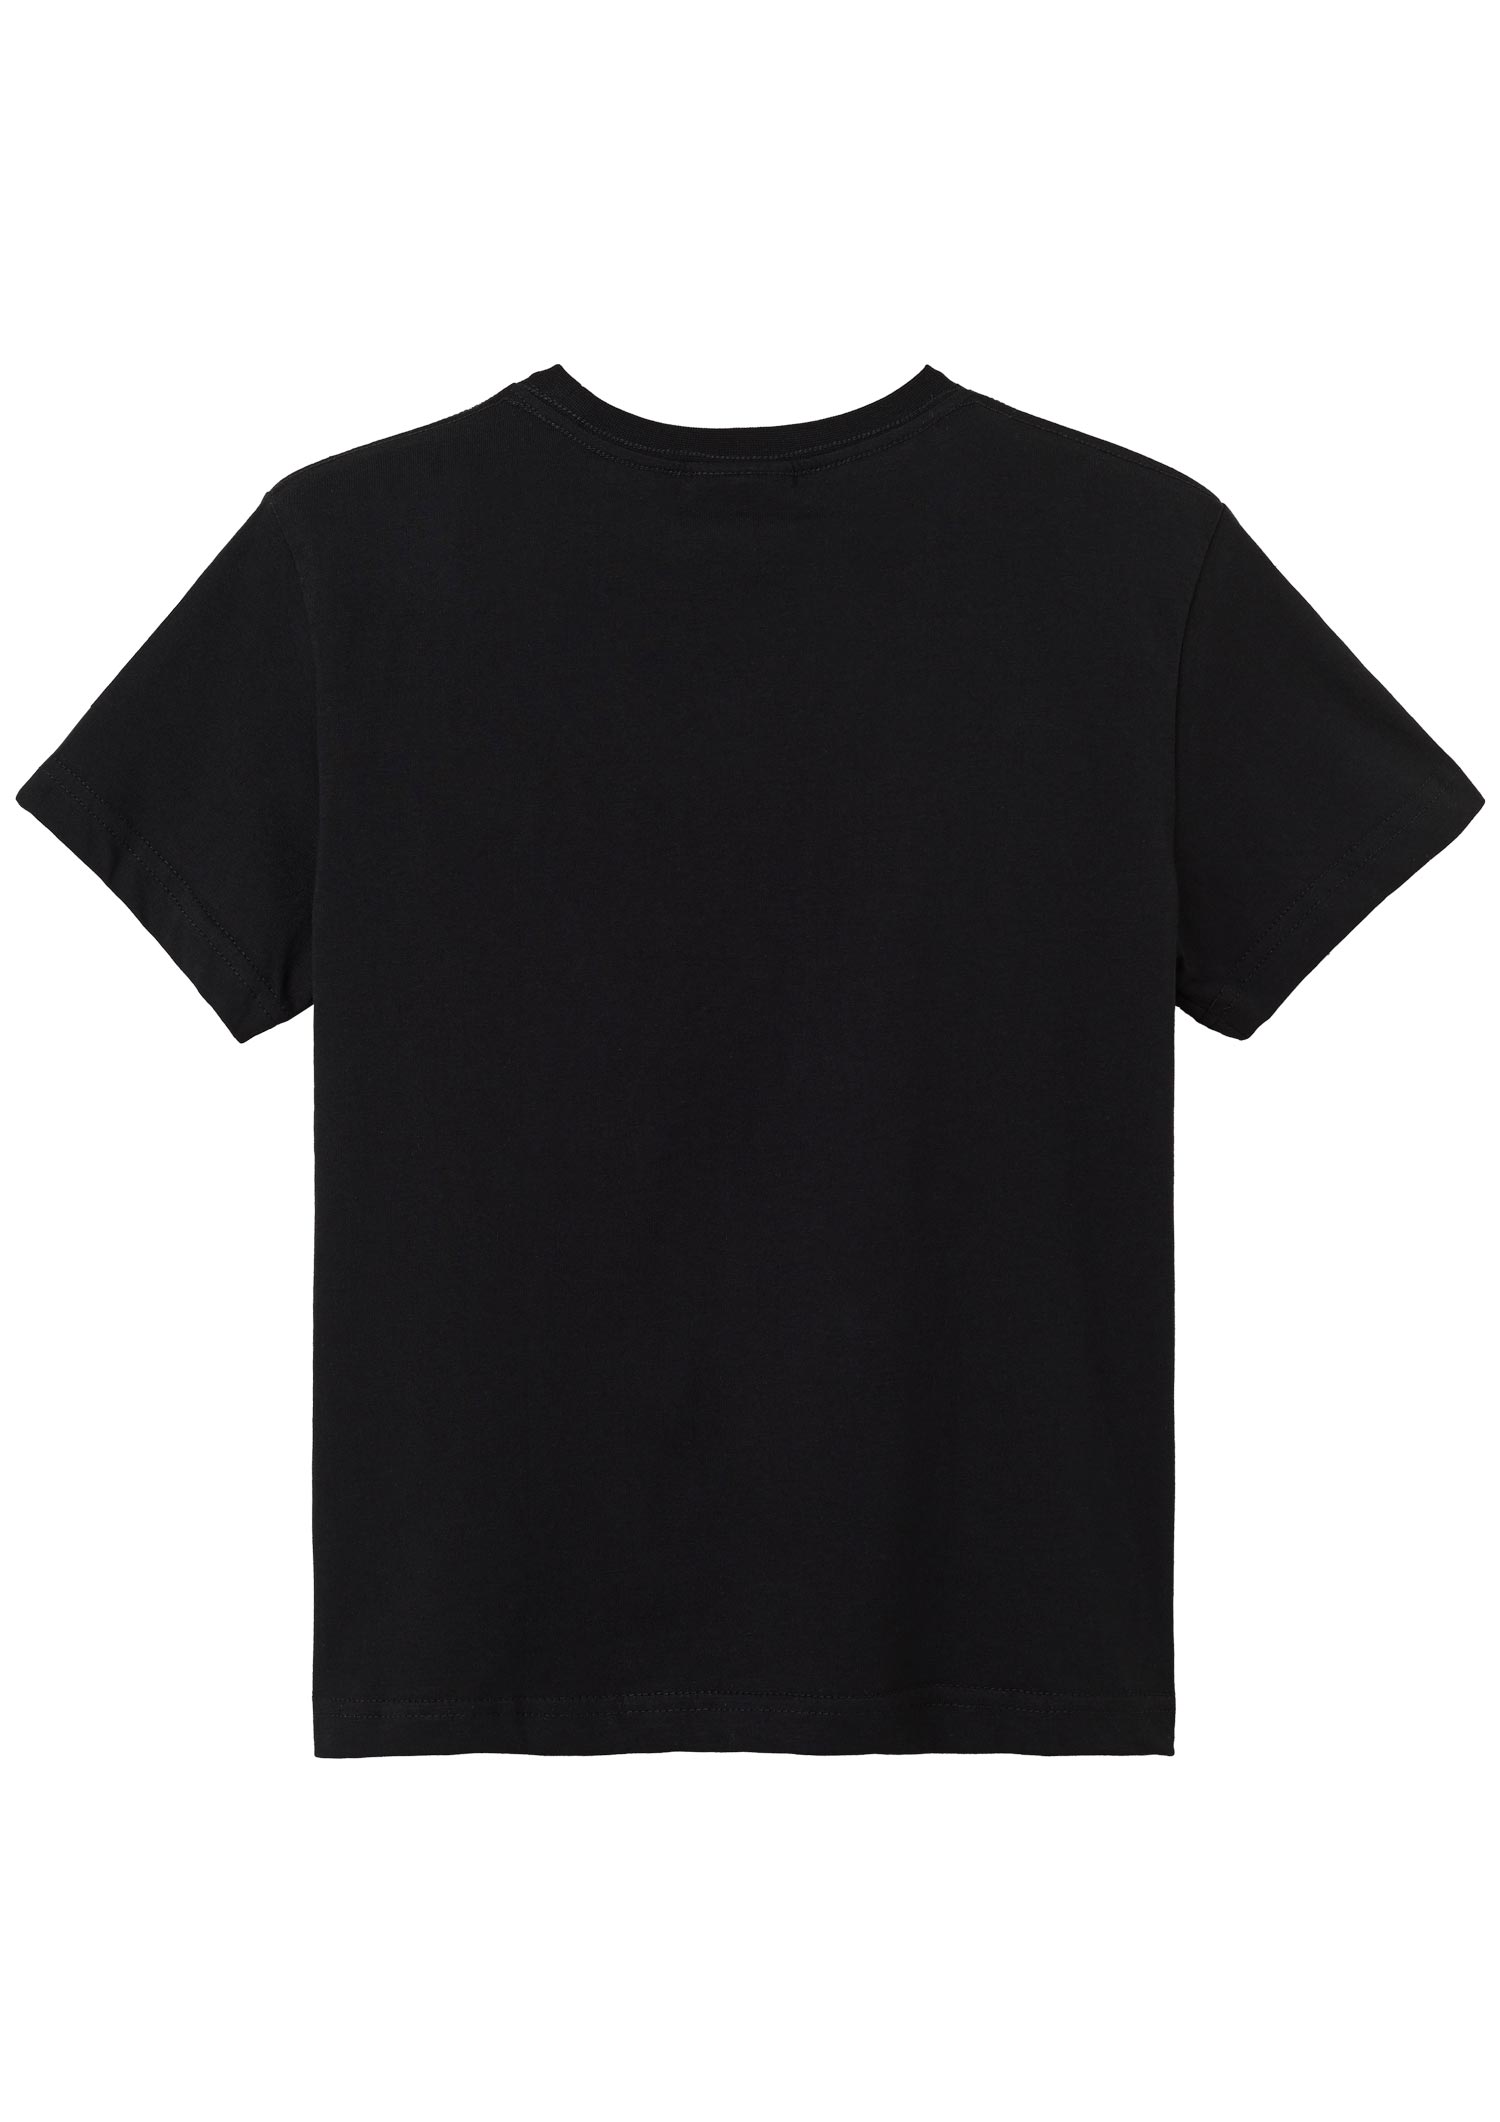 Kids T-Shirt Glitter black-anthracite